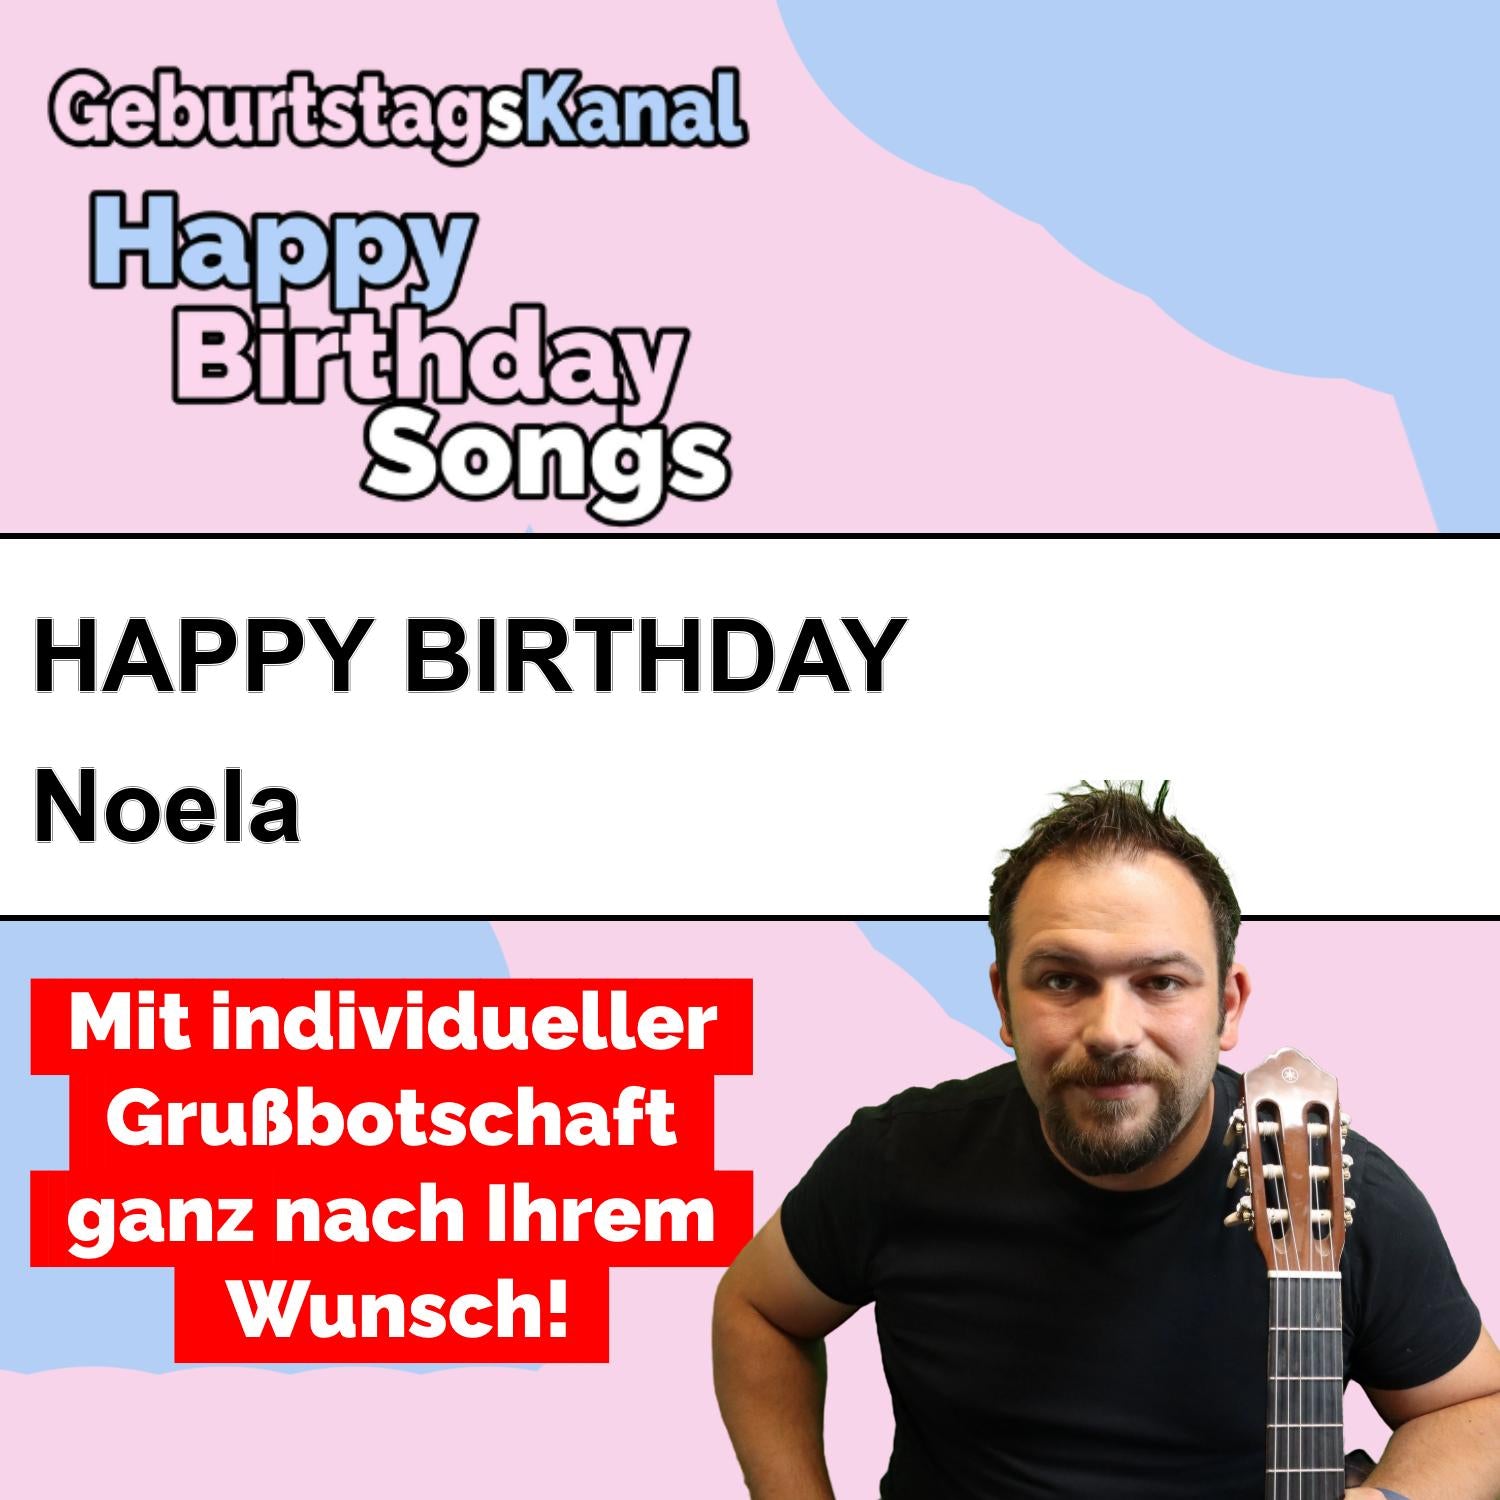 Produktbild Happy Birthday to you Noela mit Wunschgrußbotschaft